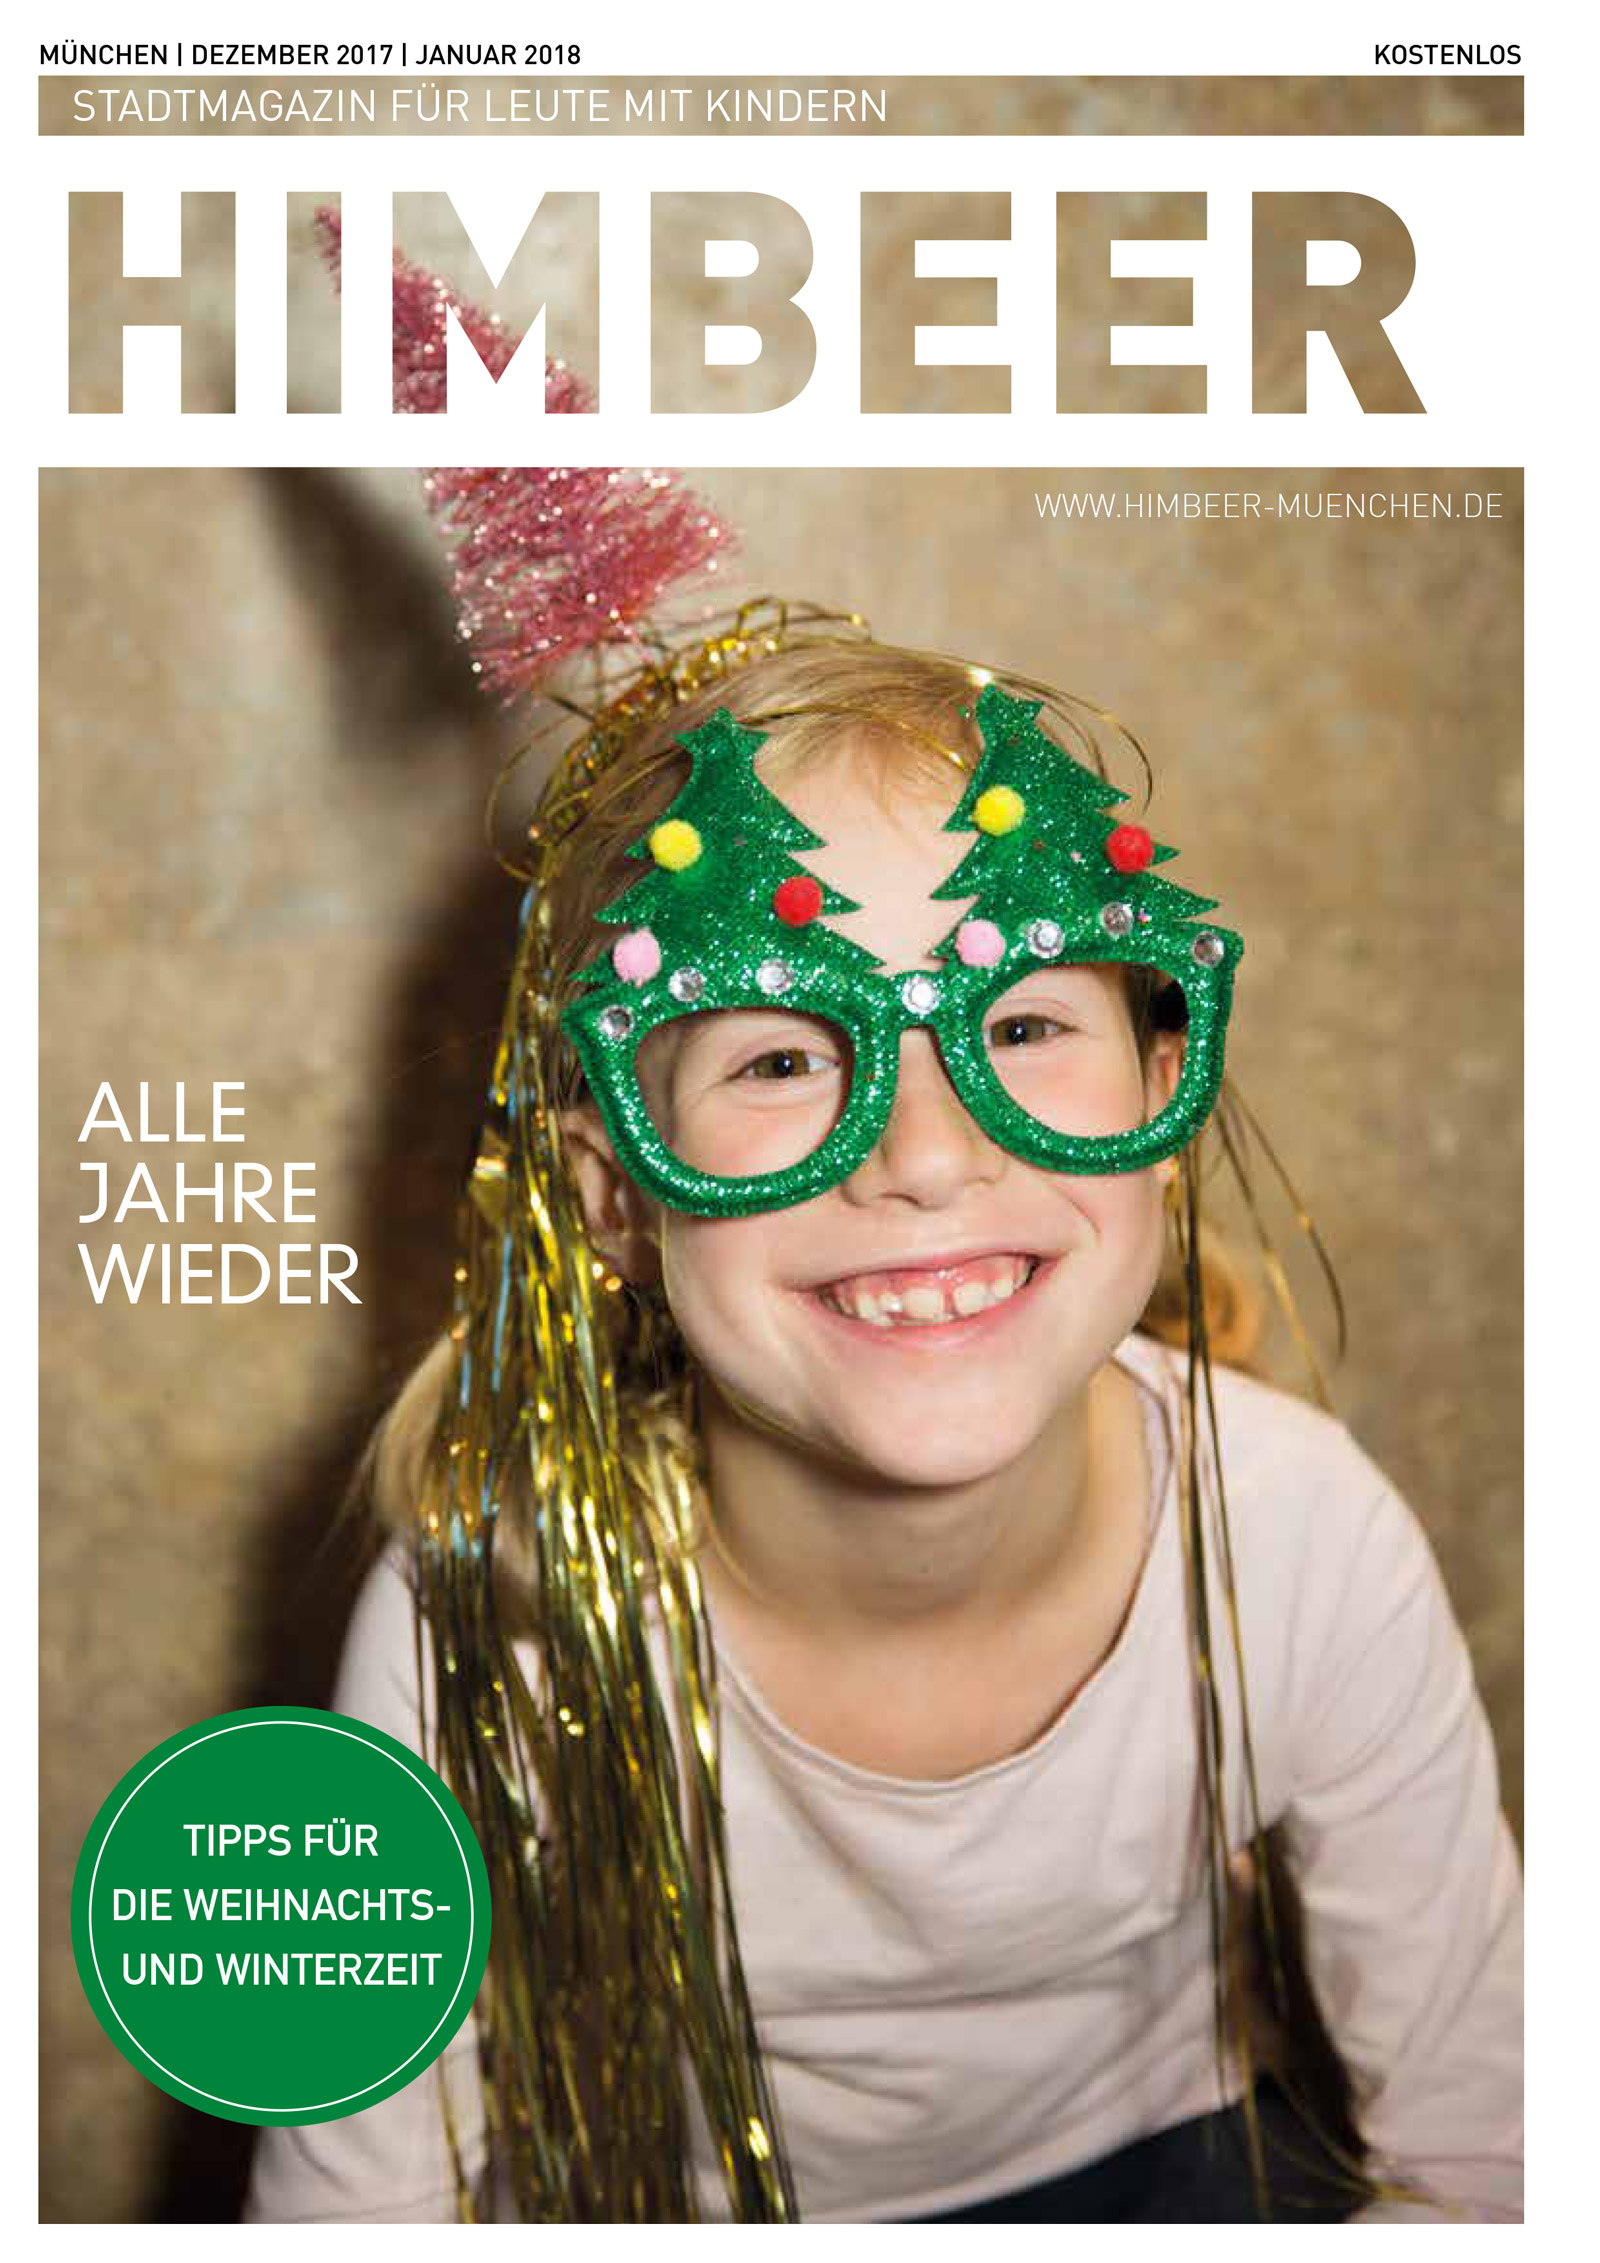 HIMBEER Muenchen DEZ JAN 2018 Seite 01 p